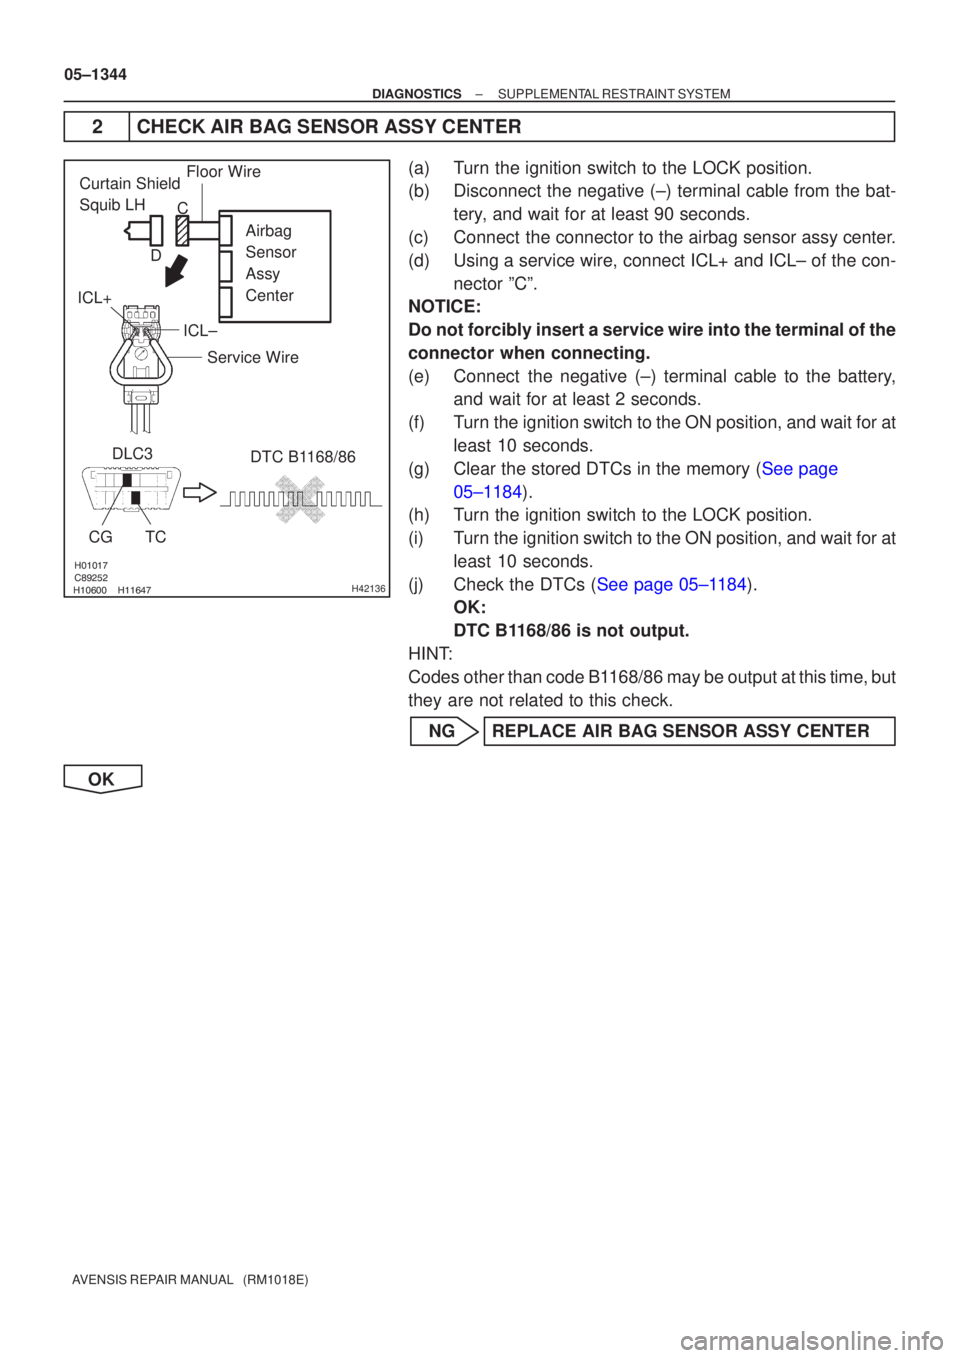 TOYOTA AVENSIS 2005  Service Repair Manual 

\b	
H42136
Airbag 
Sensor 
Assy 
Center
DLC3
CGTC DTC B1168/86
Floor WireCurtain Shield 
Squib LH
Service Wire
ICL±
ICL+ C
D
05±1344
±
DIAGNOSTICS SUPPLEMENTAL RESTRAINT SYST